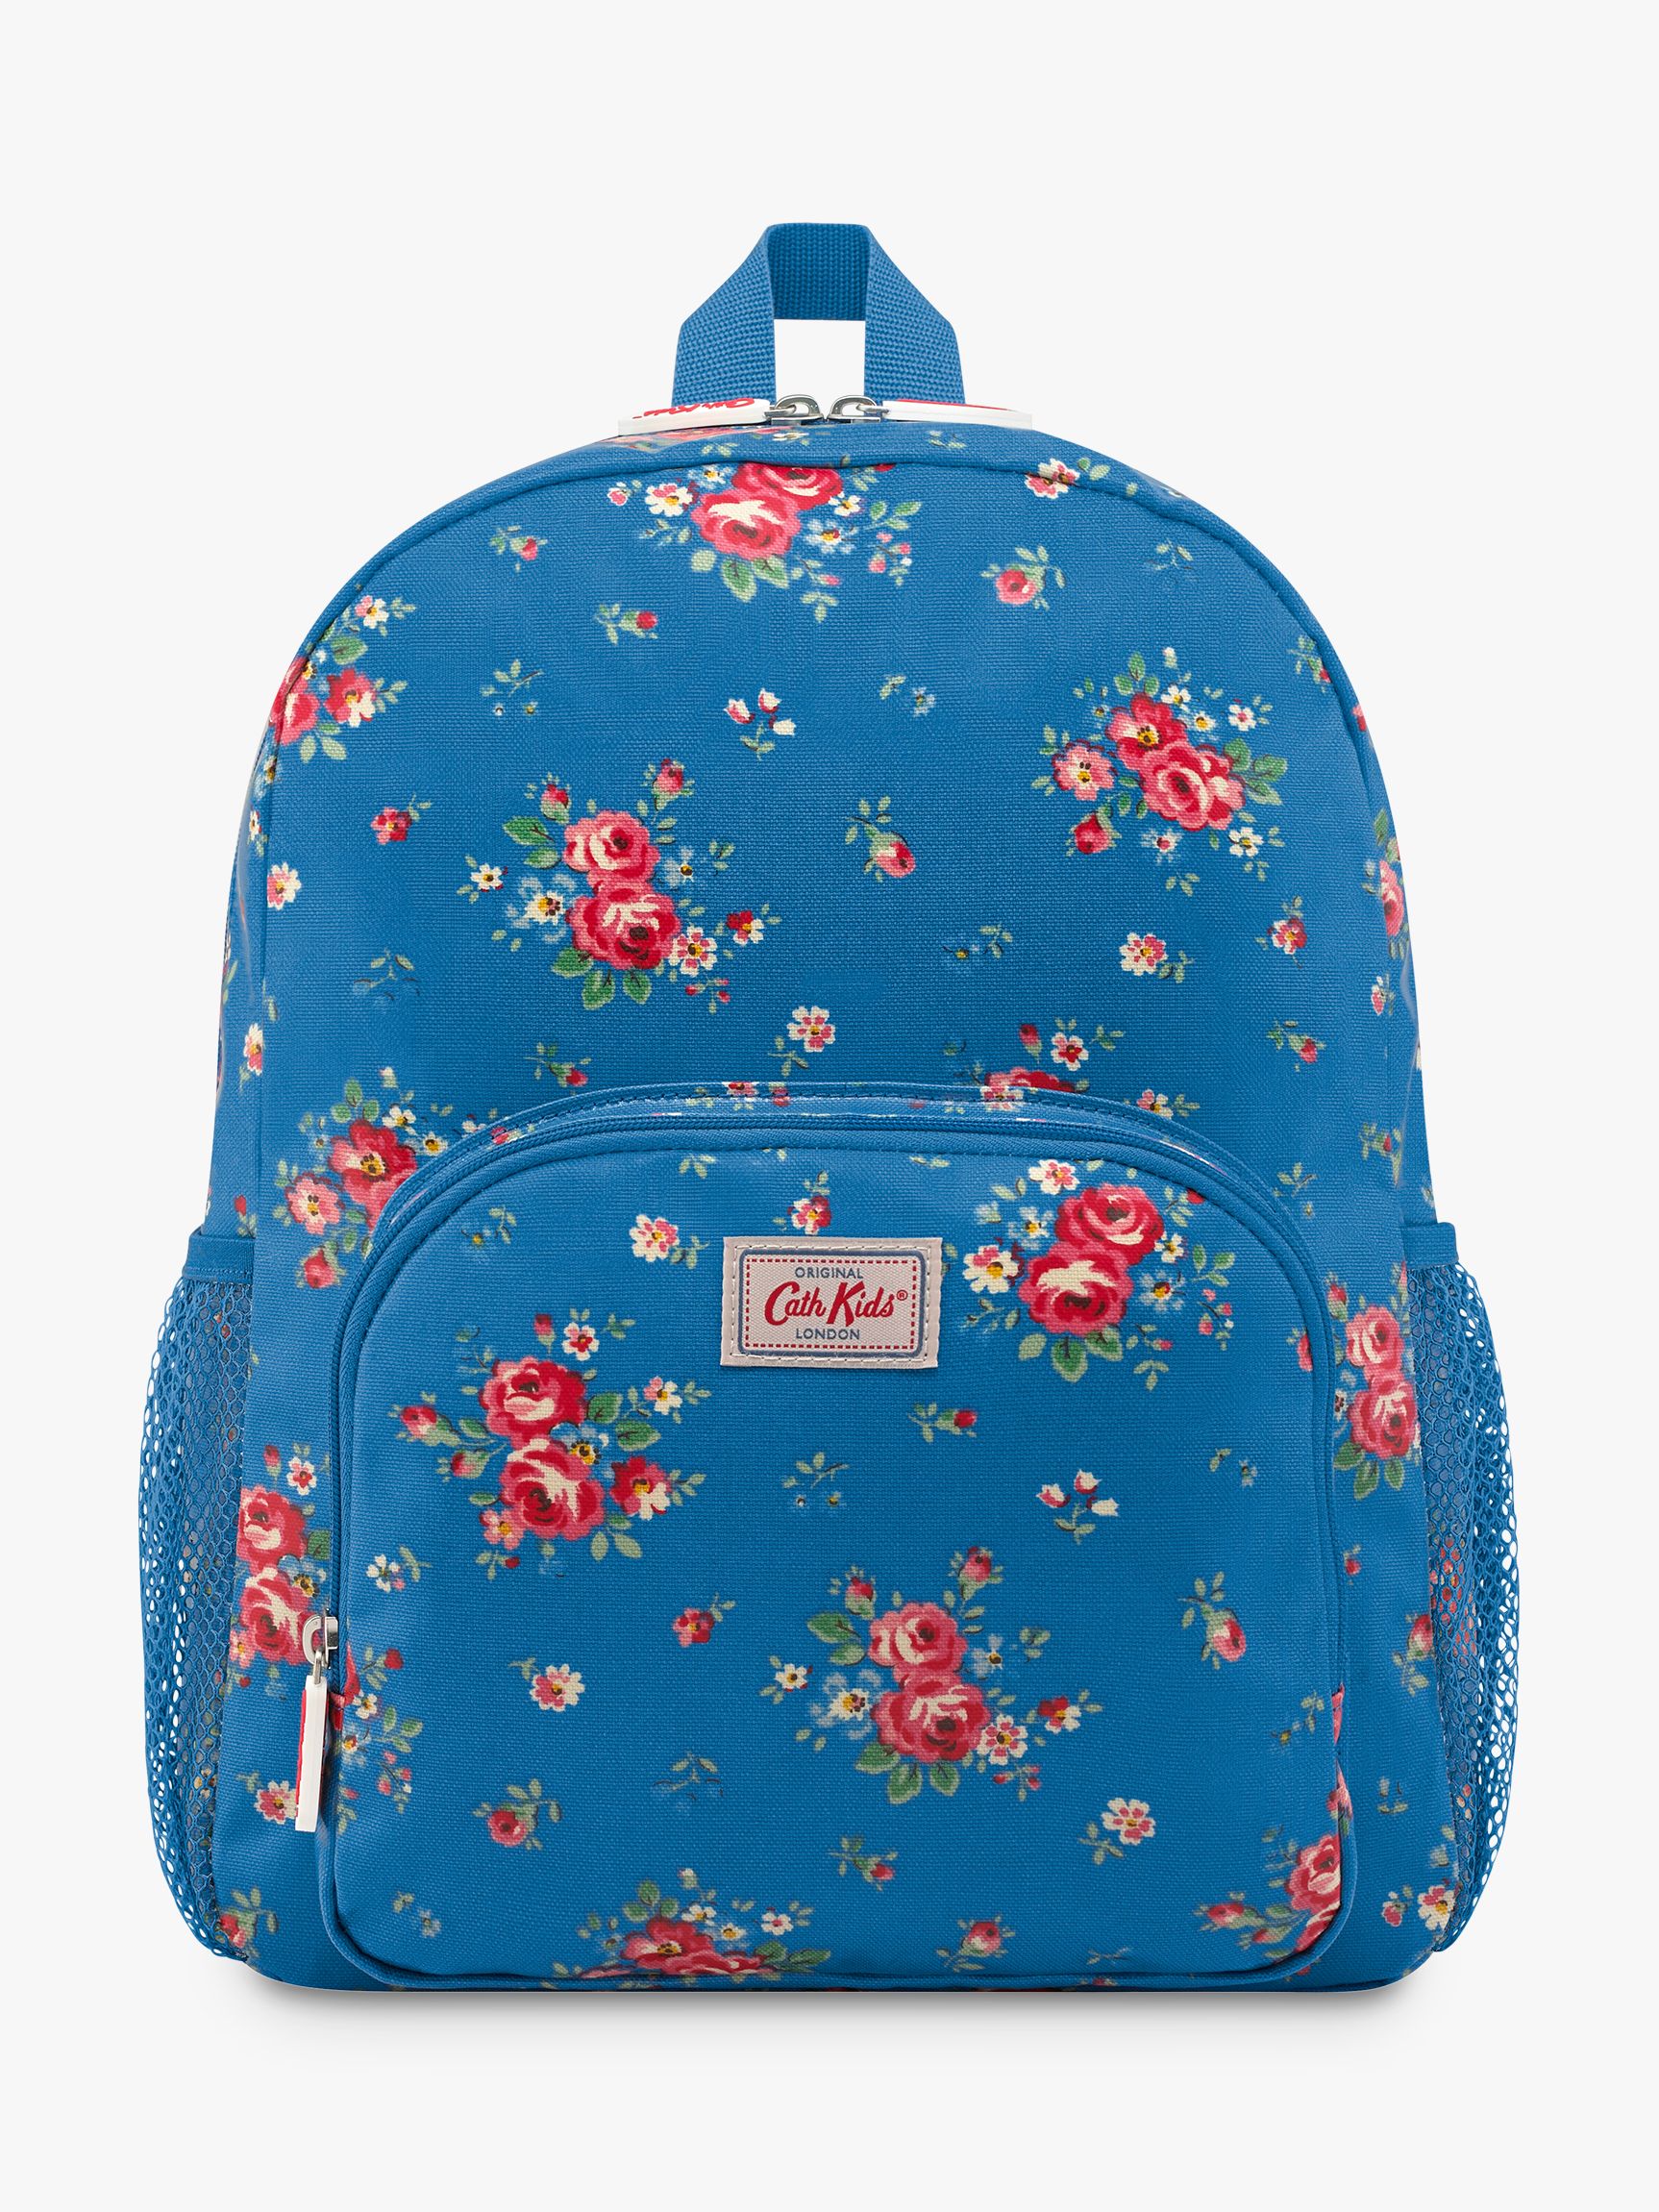 cath kidston blue backpack